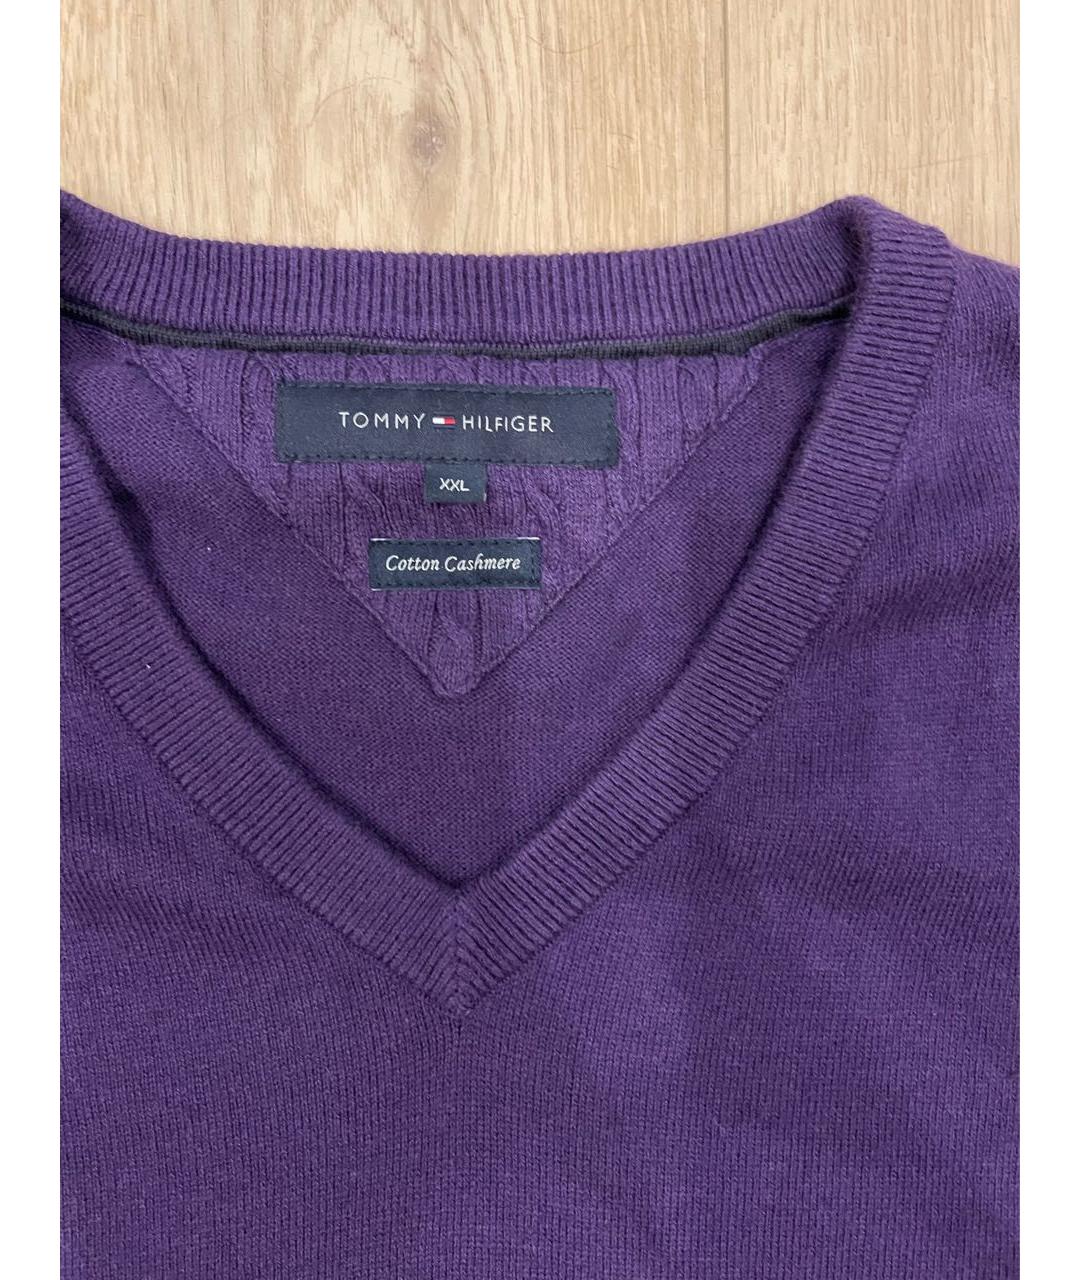 TOMMY HILFIGER Фиолетовый хлопковый джемпер / свитер, фото 3